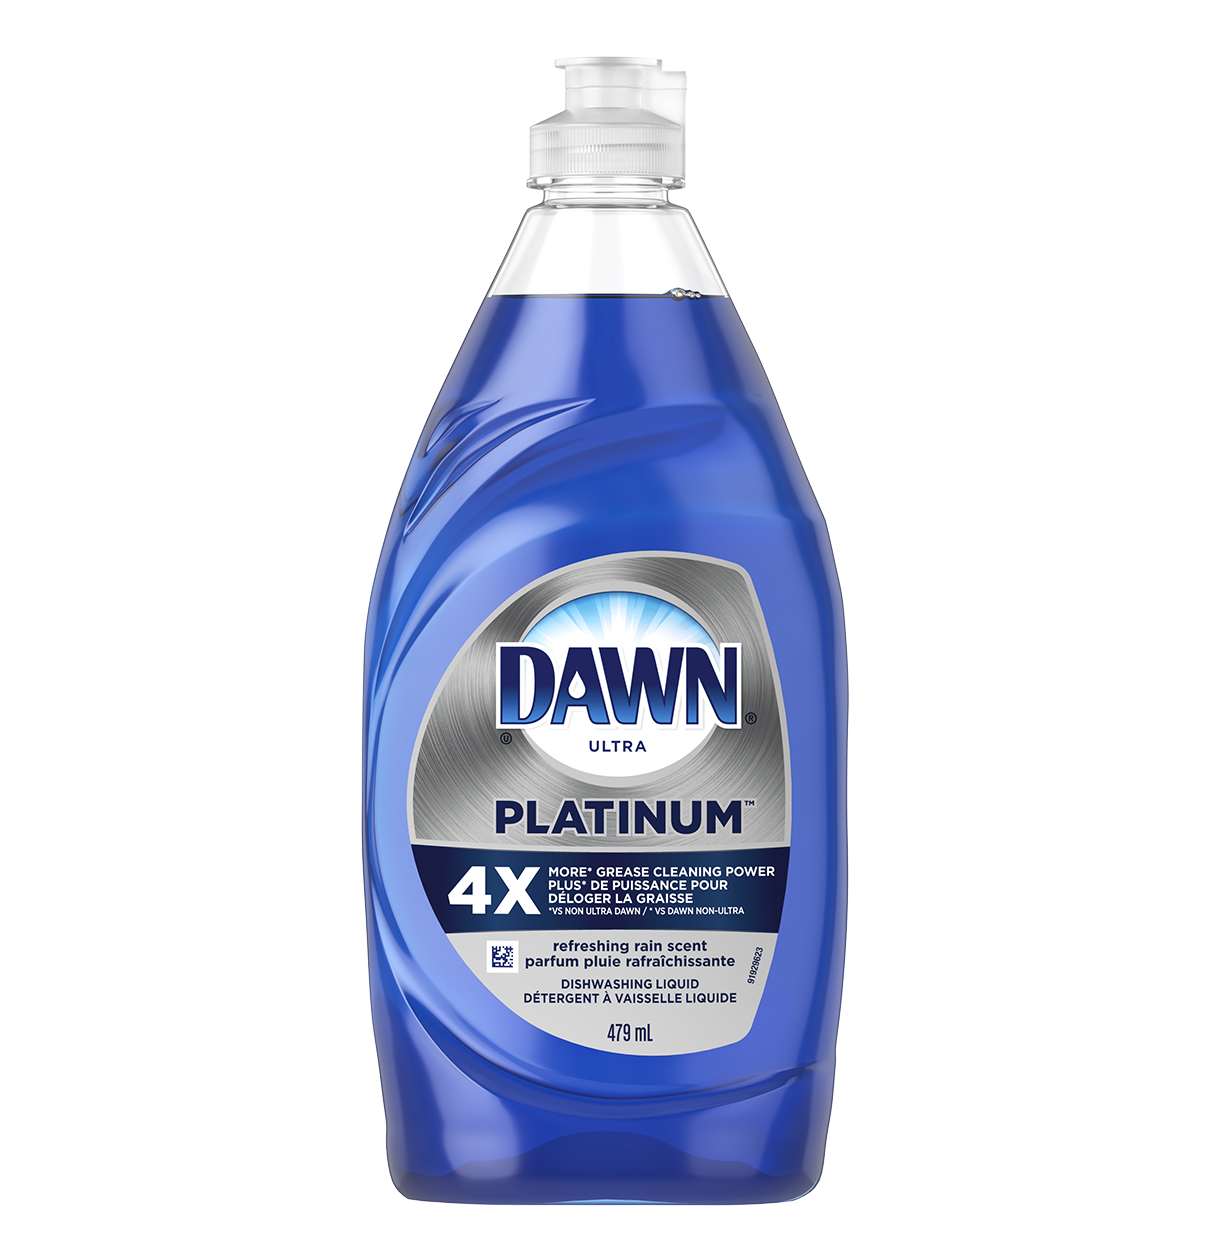 Dawn Platinum Dishwashing Liquid, Refreshing Rain